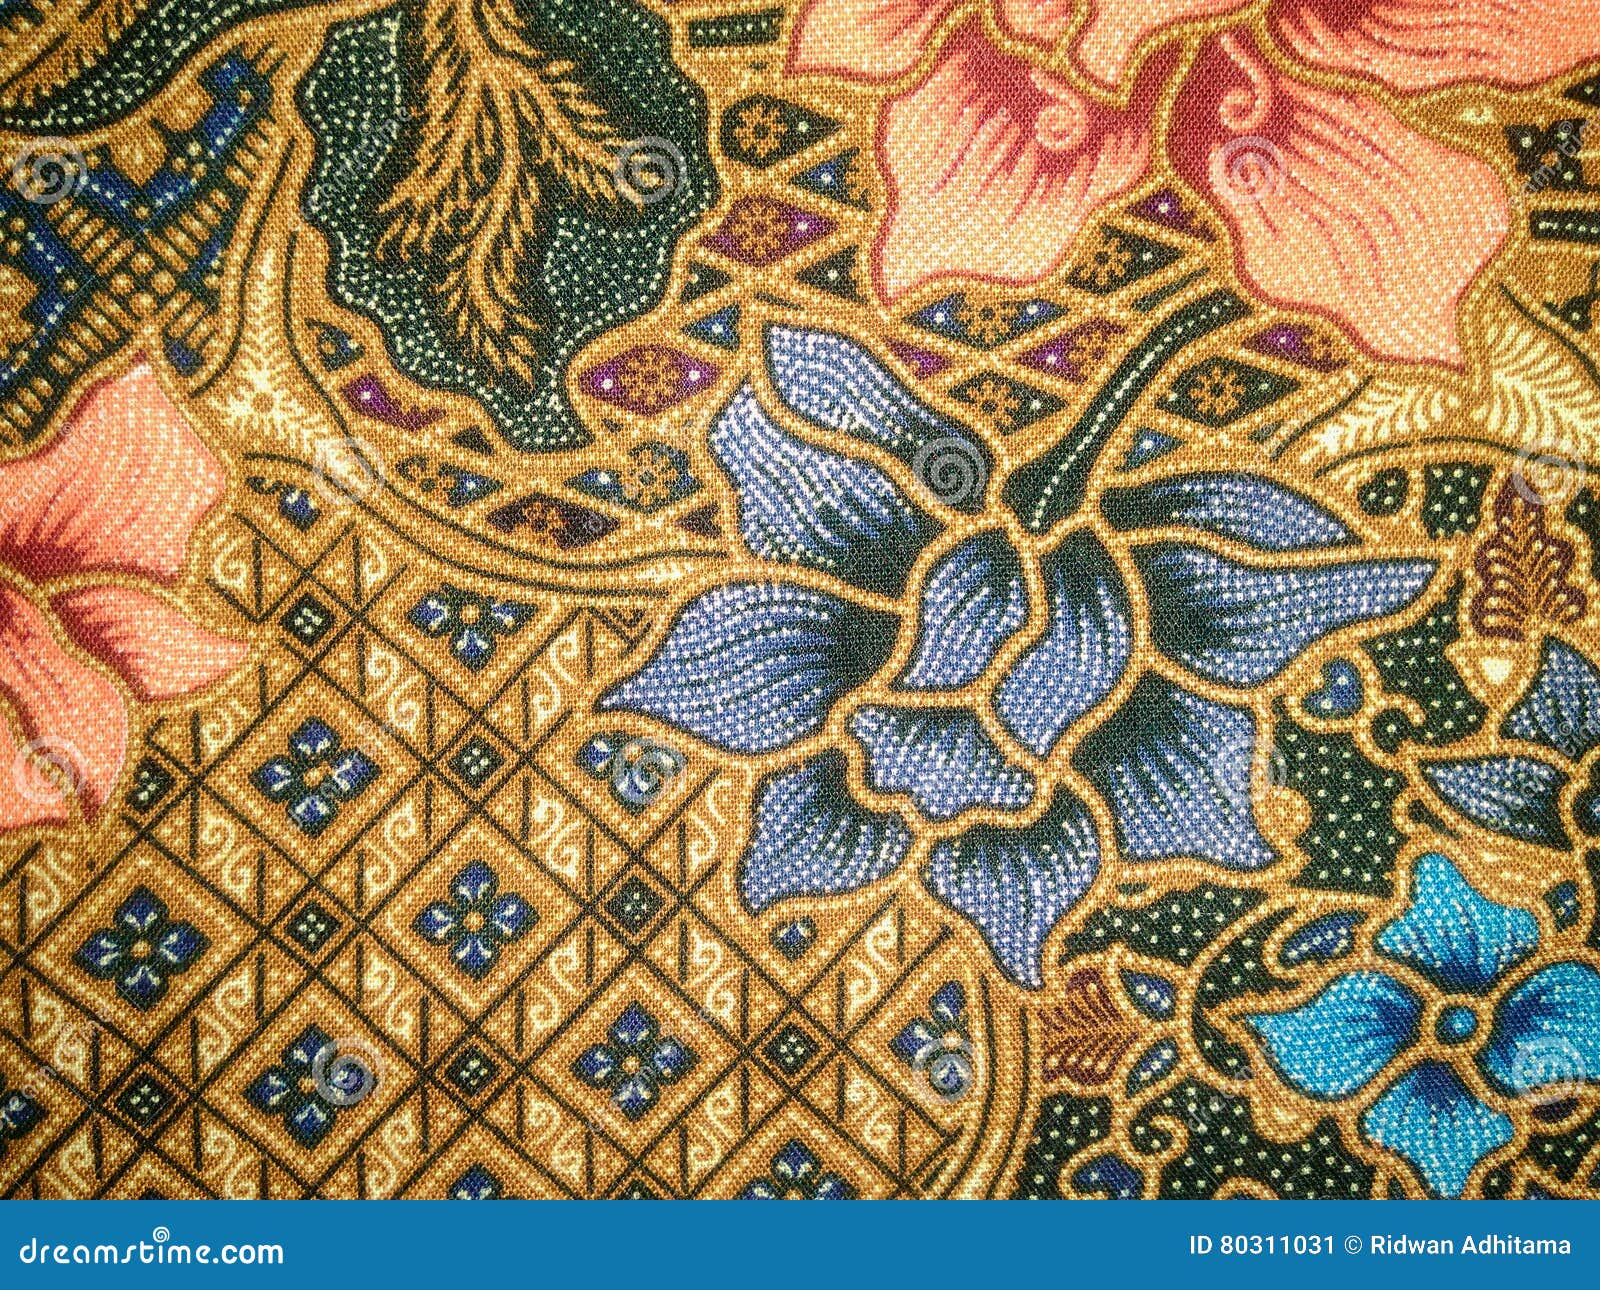  Batik fabric art  stock image Image of clothing colorful 